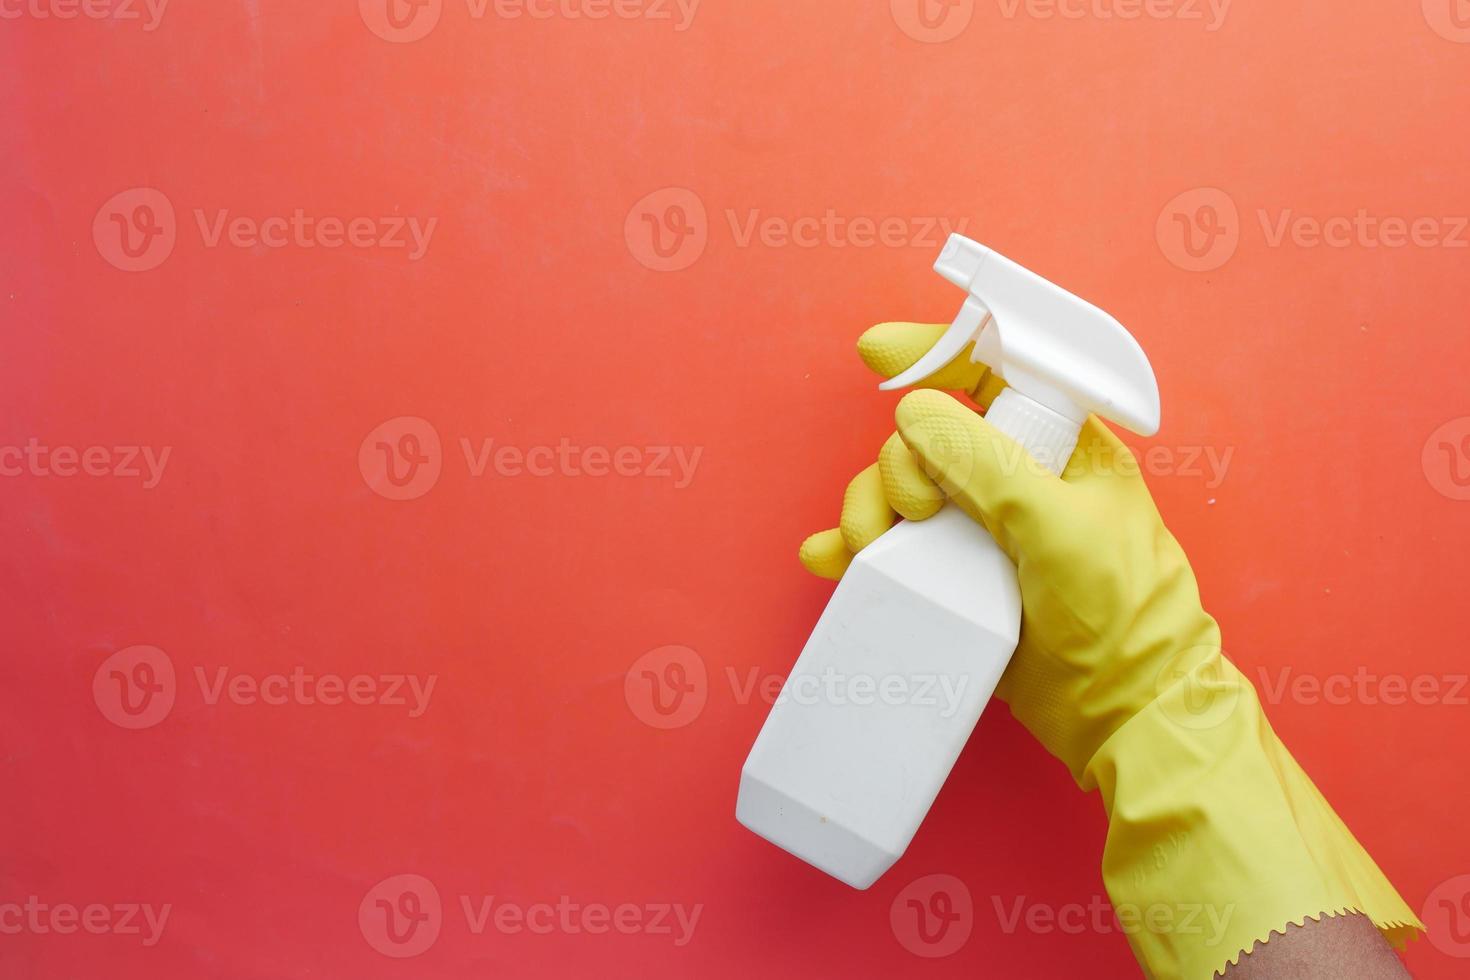 Mano en guantes de goma azul sosteniendo una botella de spray con espacio de copia foto